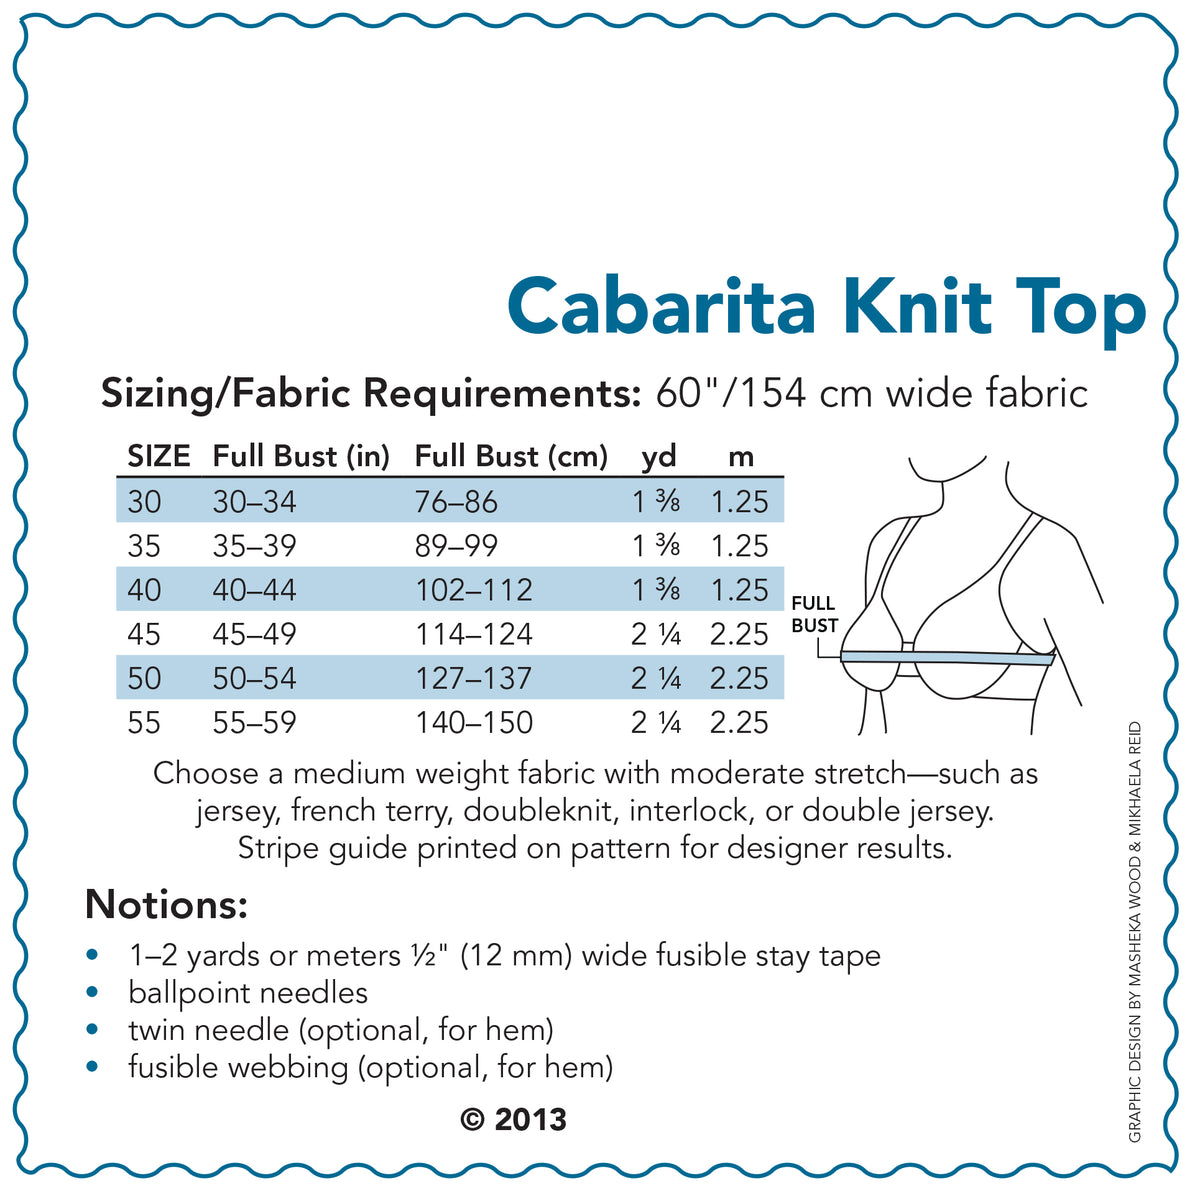 SEWING CAKE 2222 - CABARITA KNIT TOP (PDF)